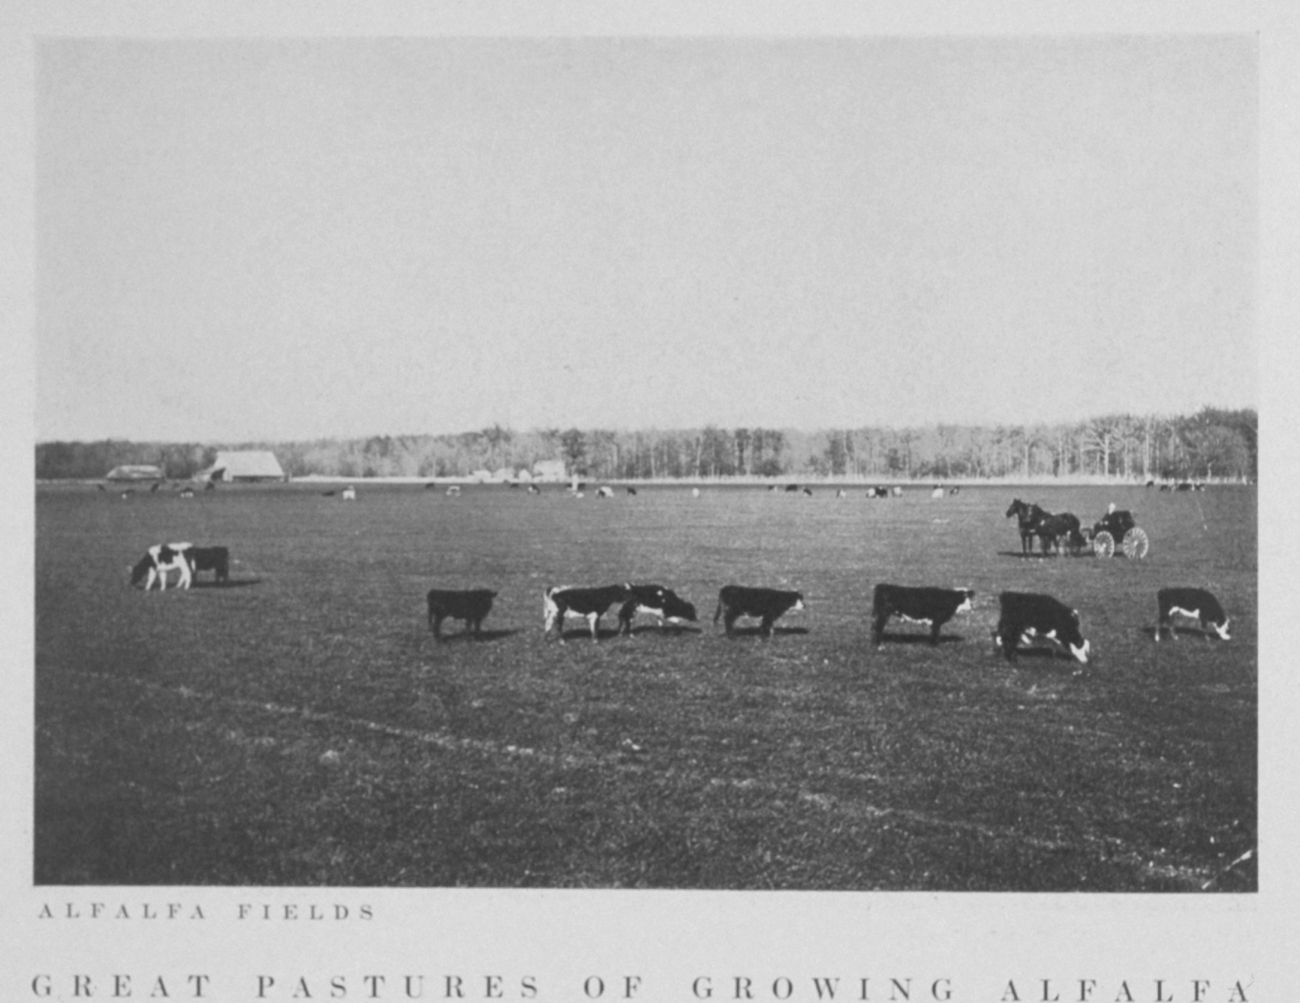 Alfalfa fields